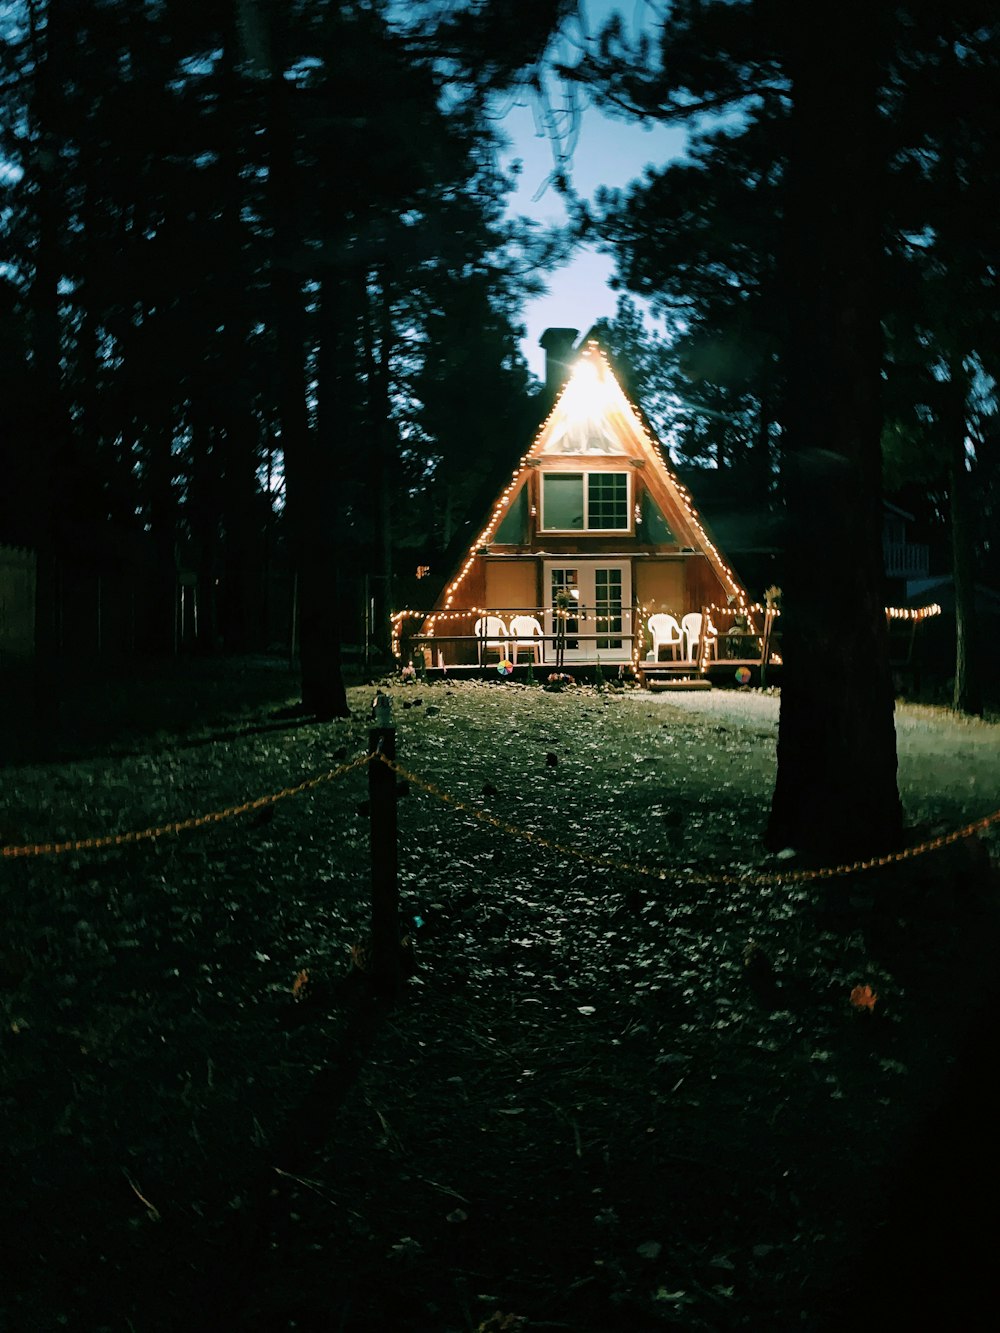 baracca di legno marrone accanto agli alberi